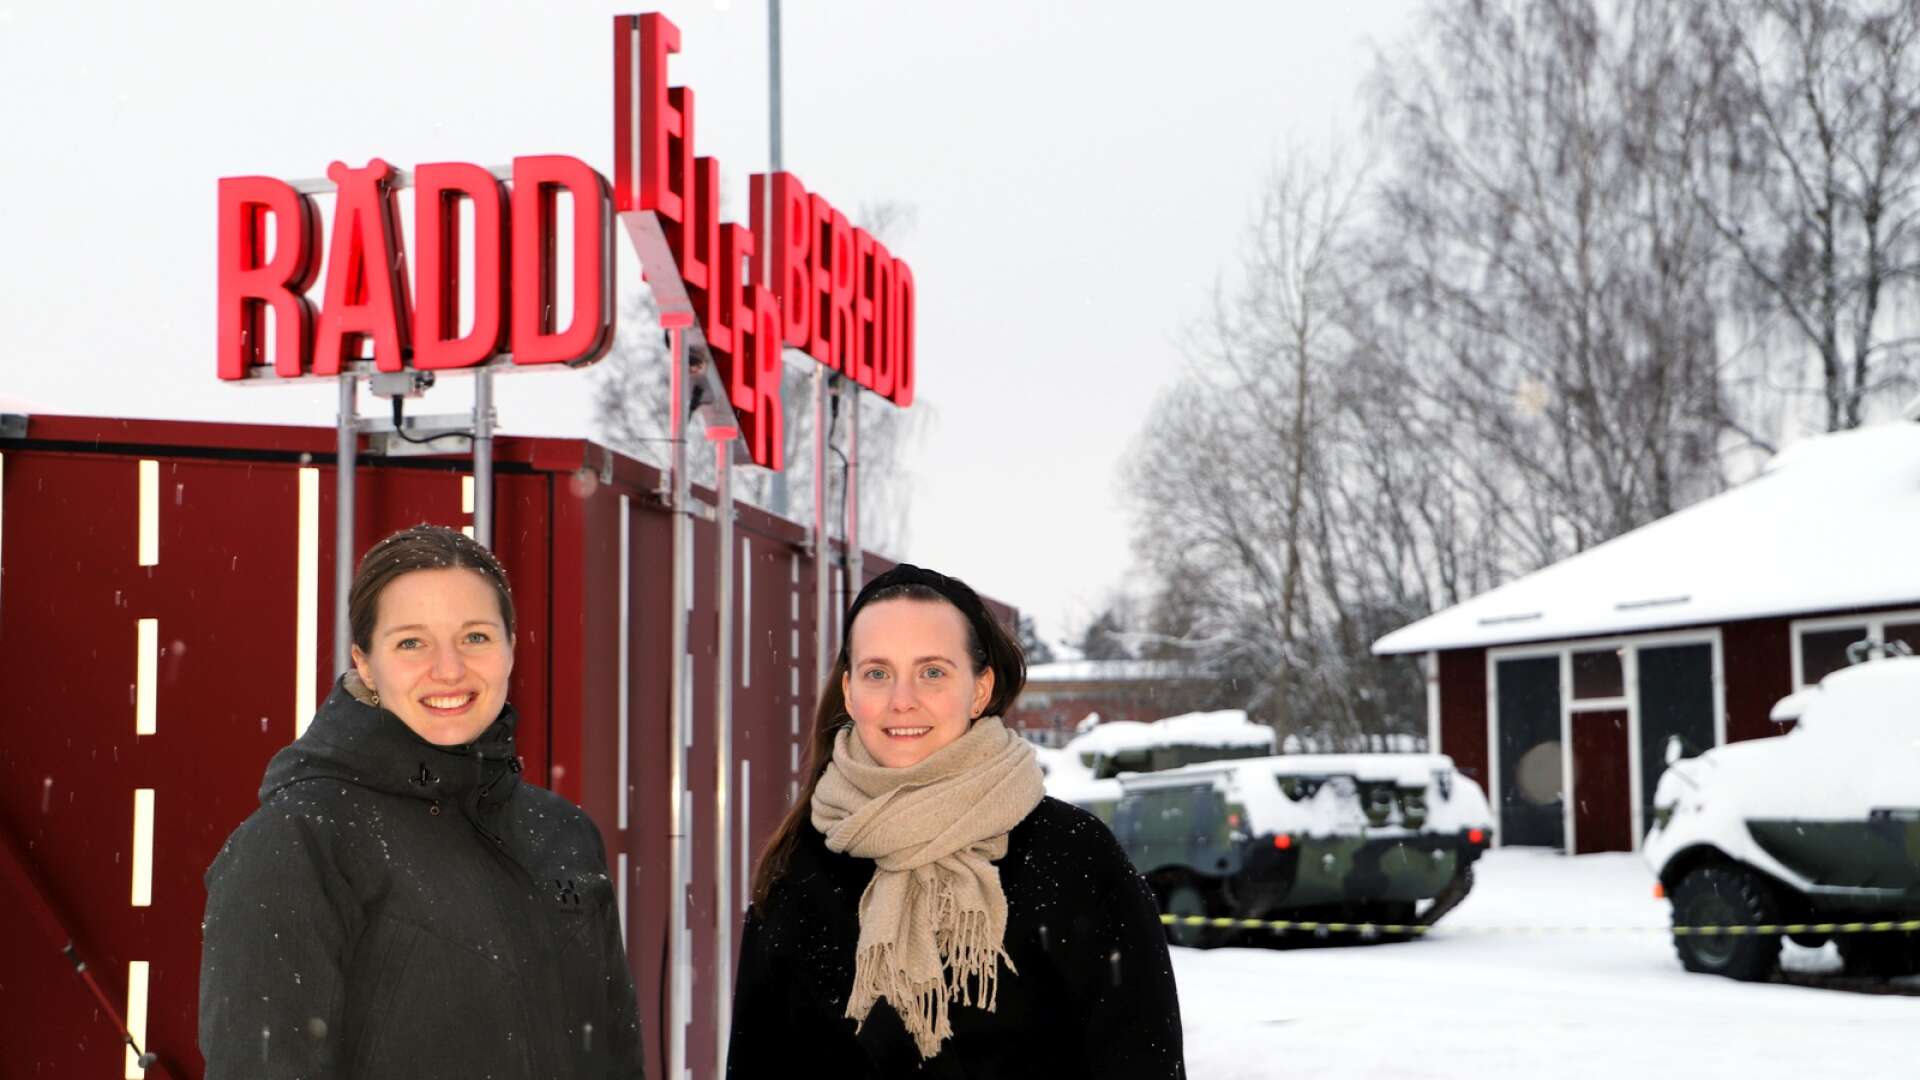 Rädd eller beredd heter utställningen som ryms i en container, som nu landat på Brigadmuseum i Karlstad. Klara Sköld är utställningsproducent på Brigadmuseum och Helén Johansson är utställningsproducent på Sveriges försvarshistoriska museer.